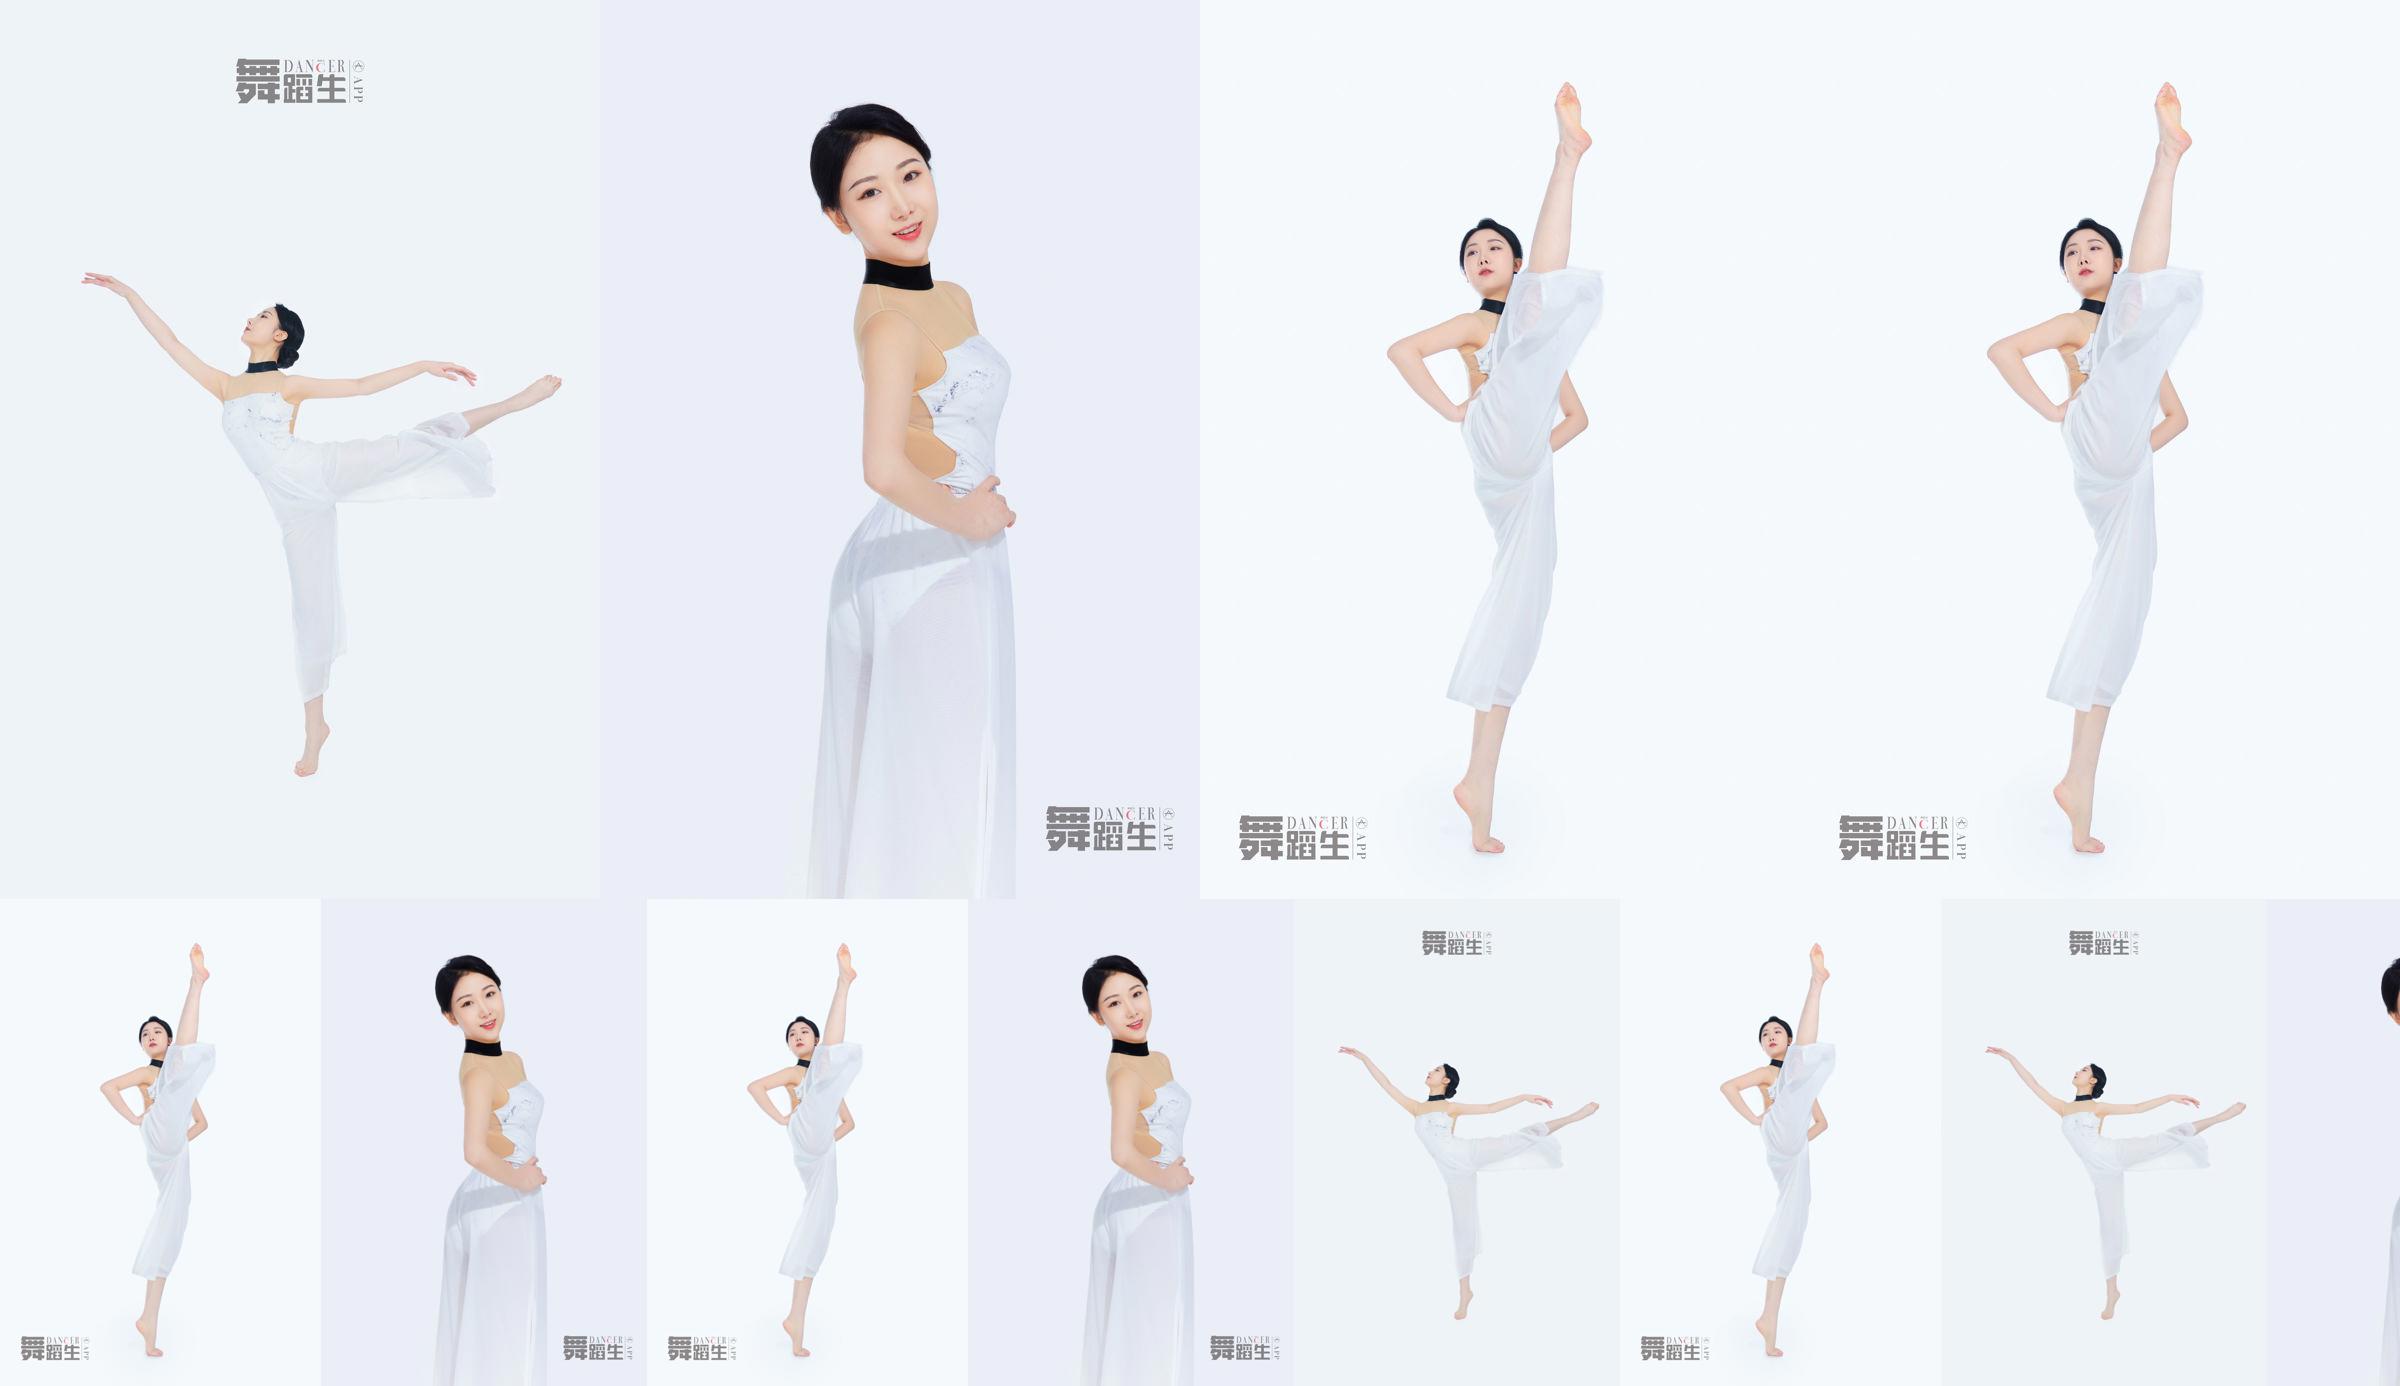 [Carrie Galli] Diario de un estudiante de danza 081 Xue Hui No.65ad10 Página 1